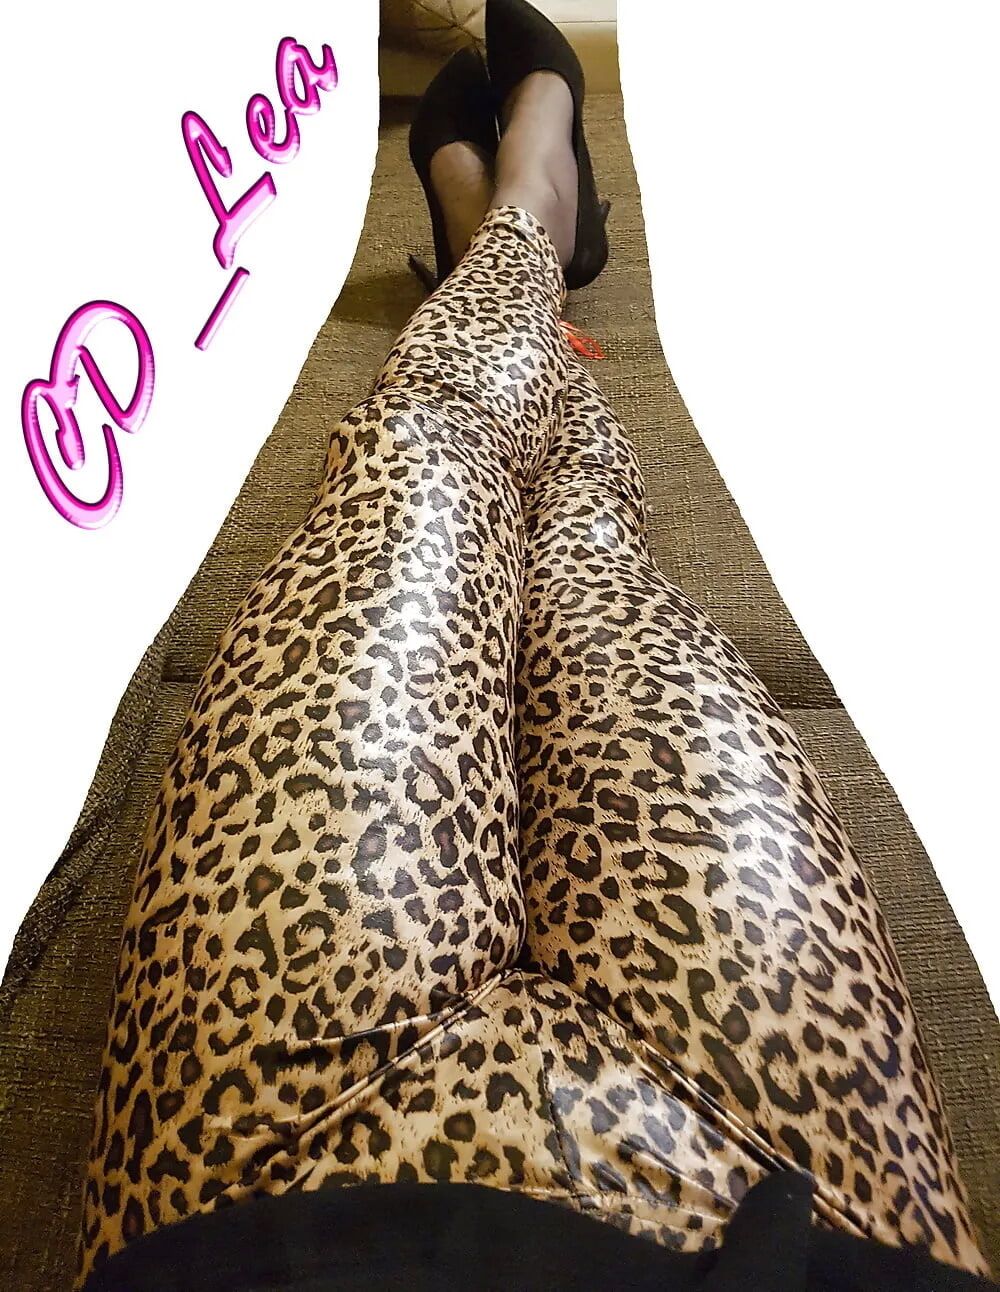 Lea in Leapard Leggings #10